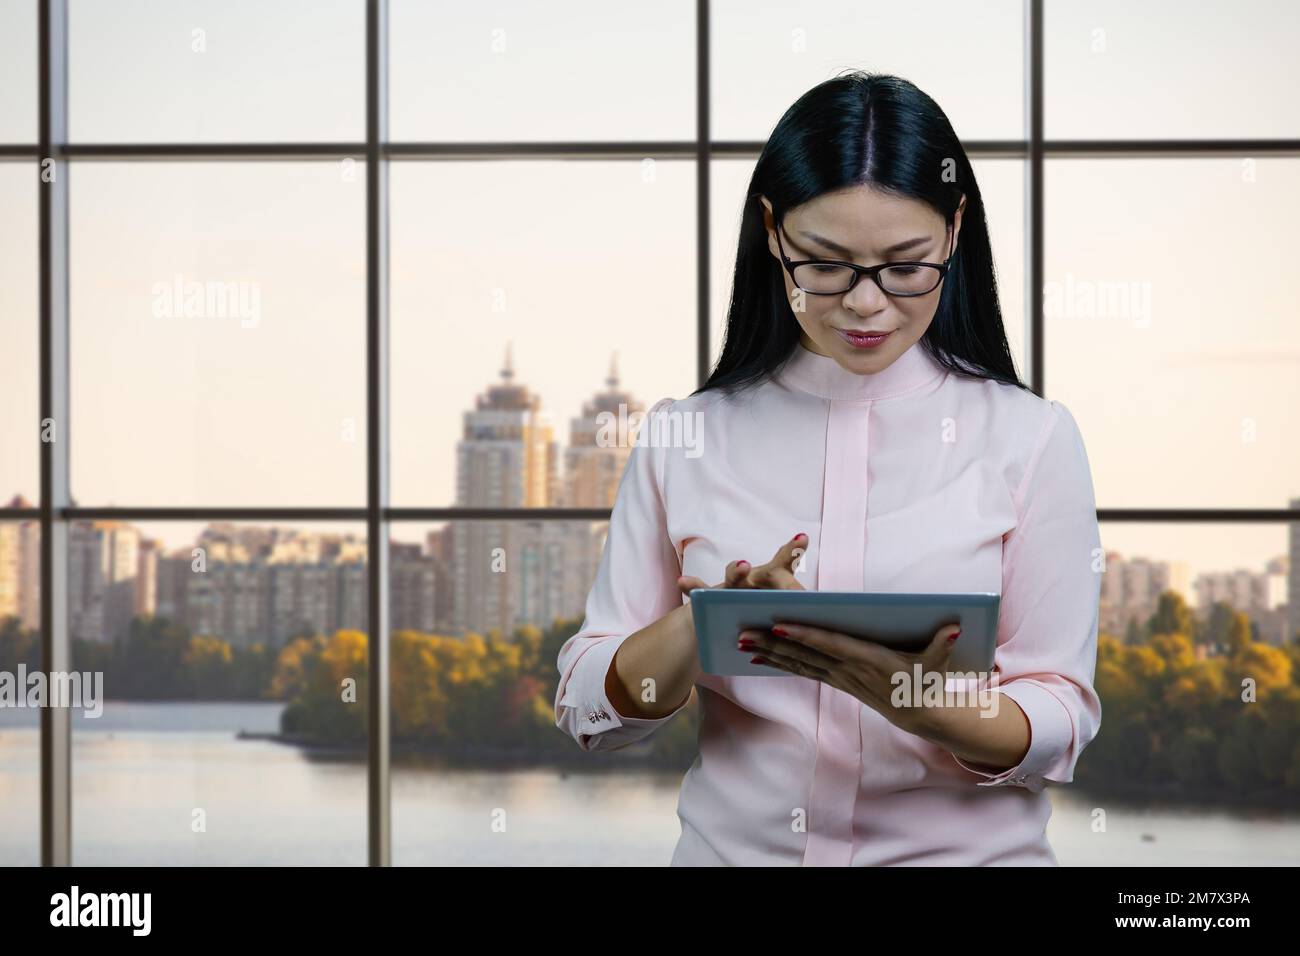 Eine junge asiatische Geschäftsfrau mit Brille verwendet im Büro einen Tablet-pc. Fenster und Hintergrund in Großstädten. Stockfoto